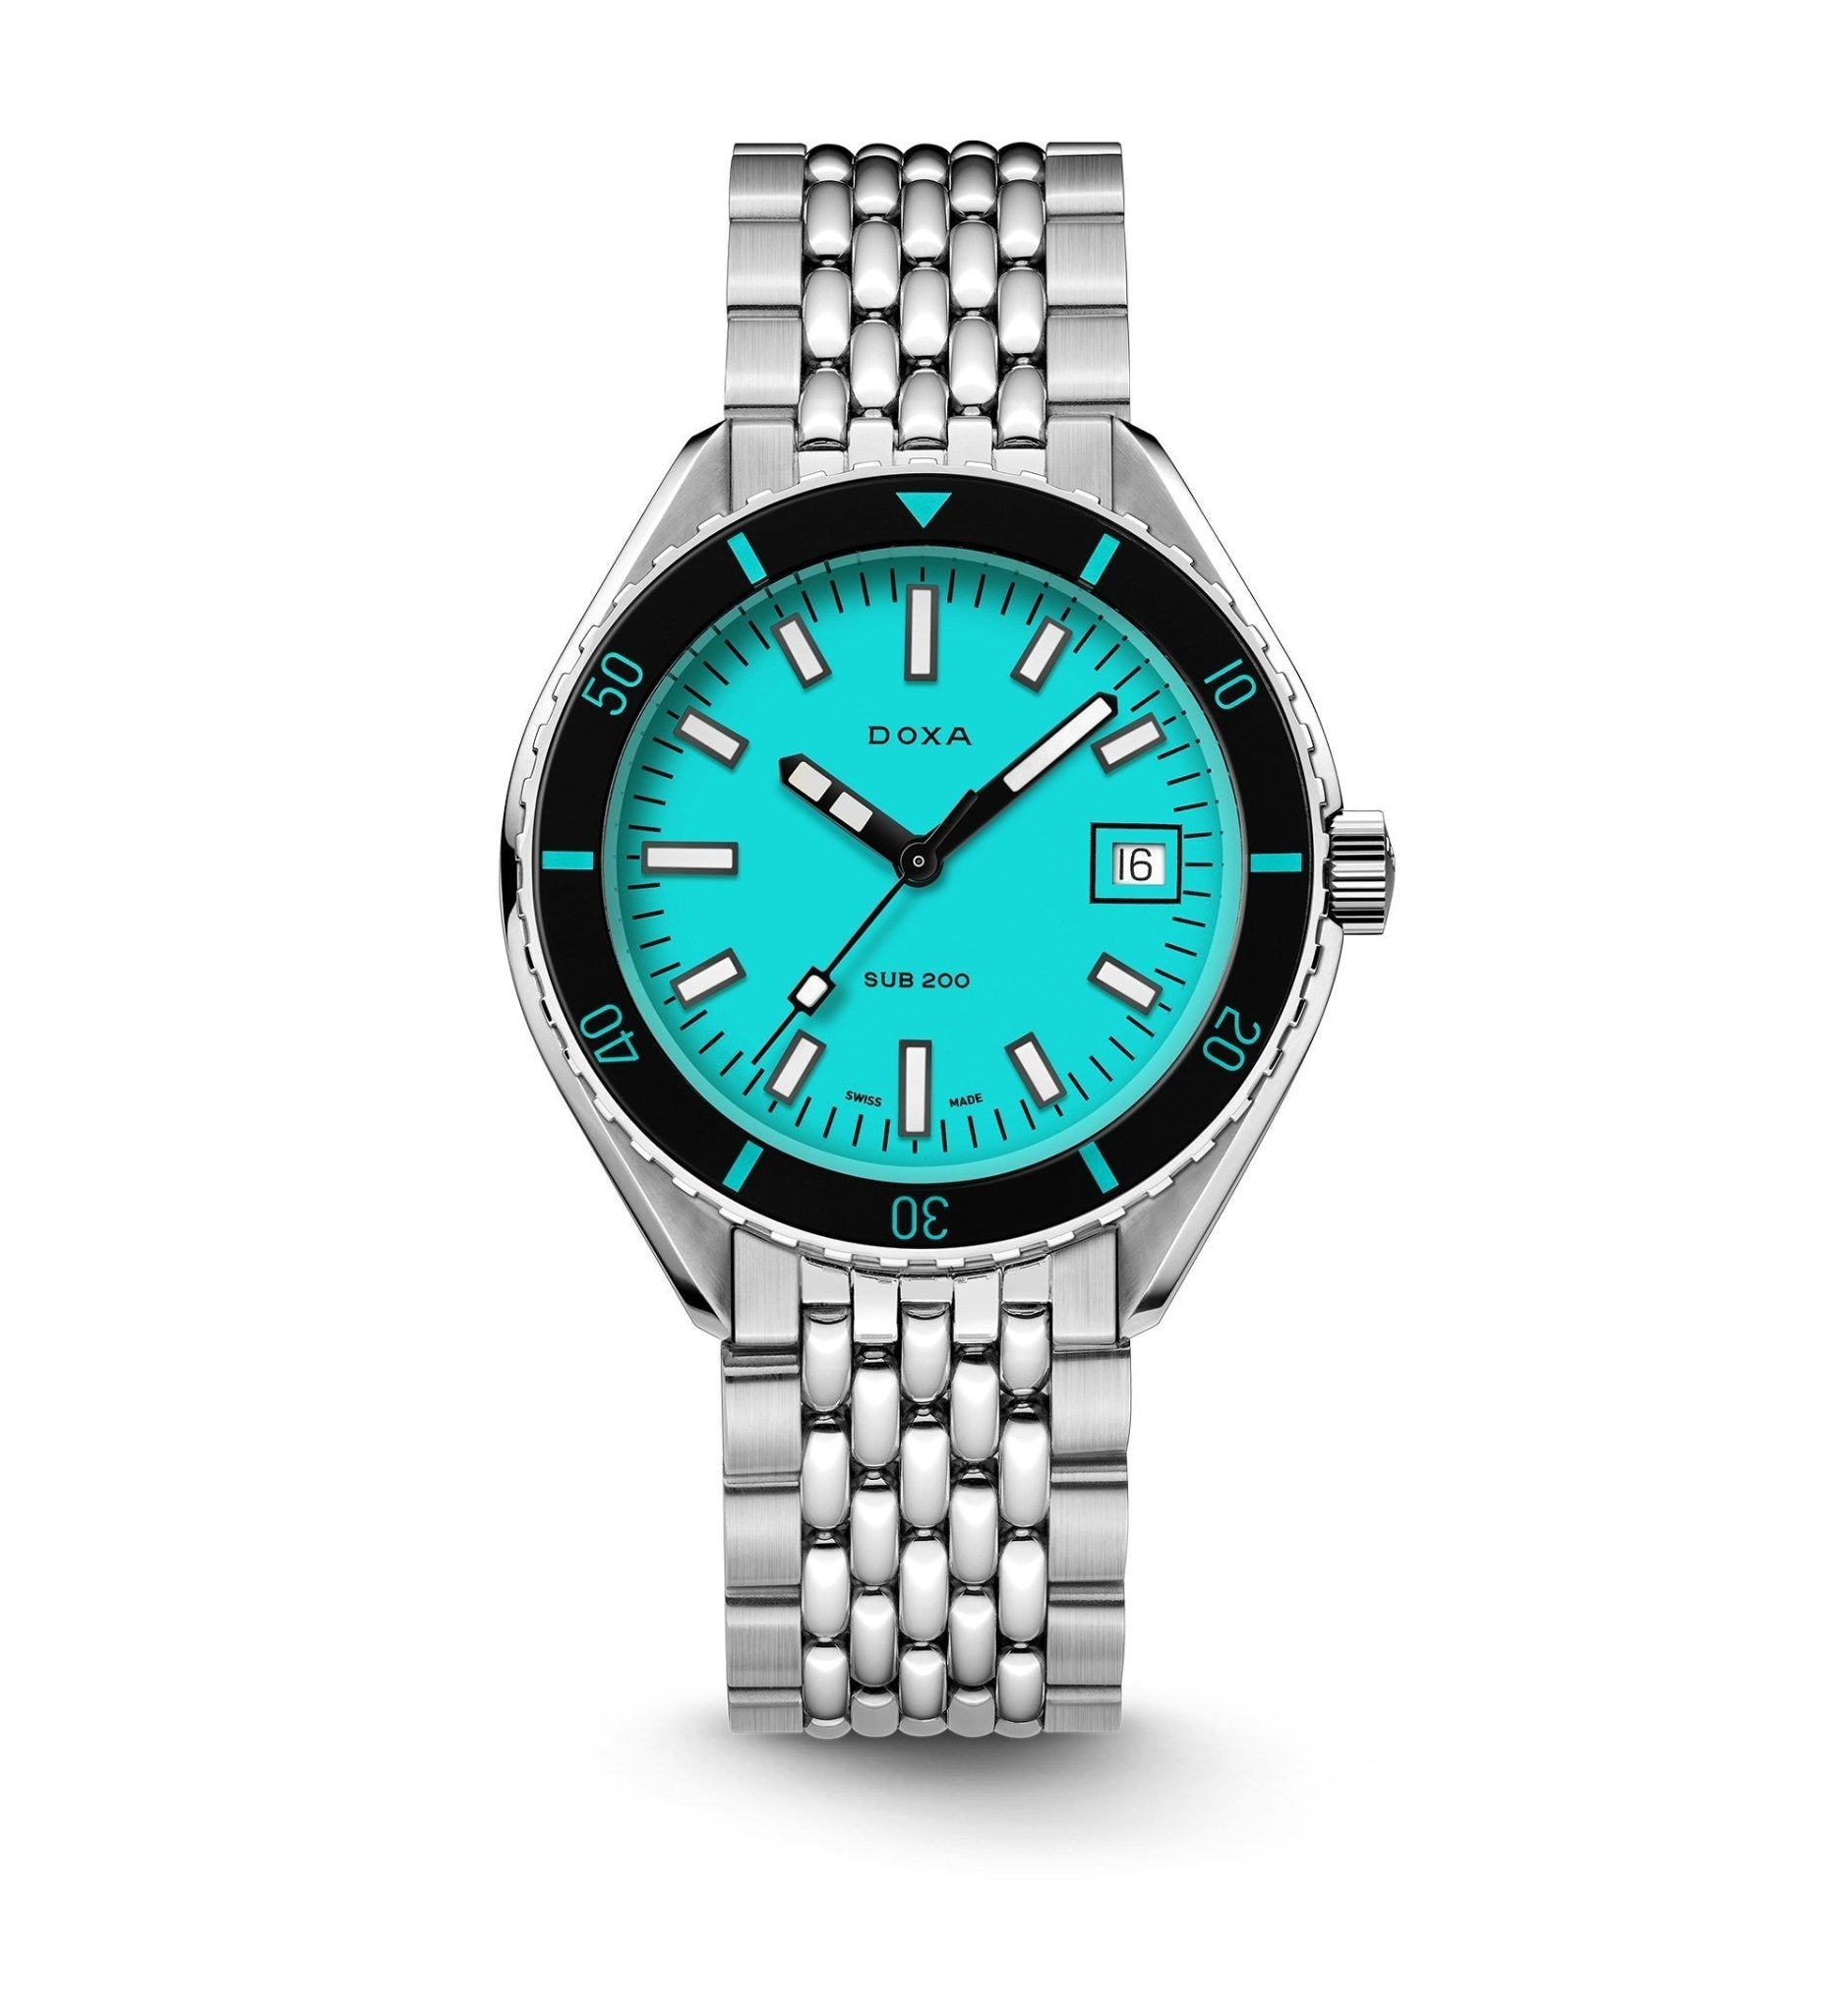 Aquamarine - DOXA Watches